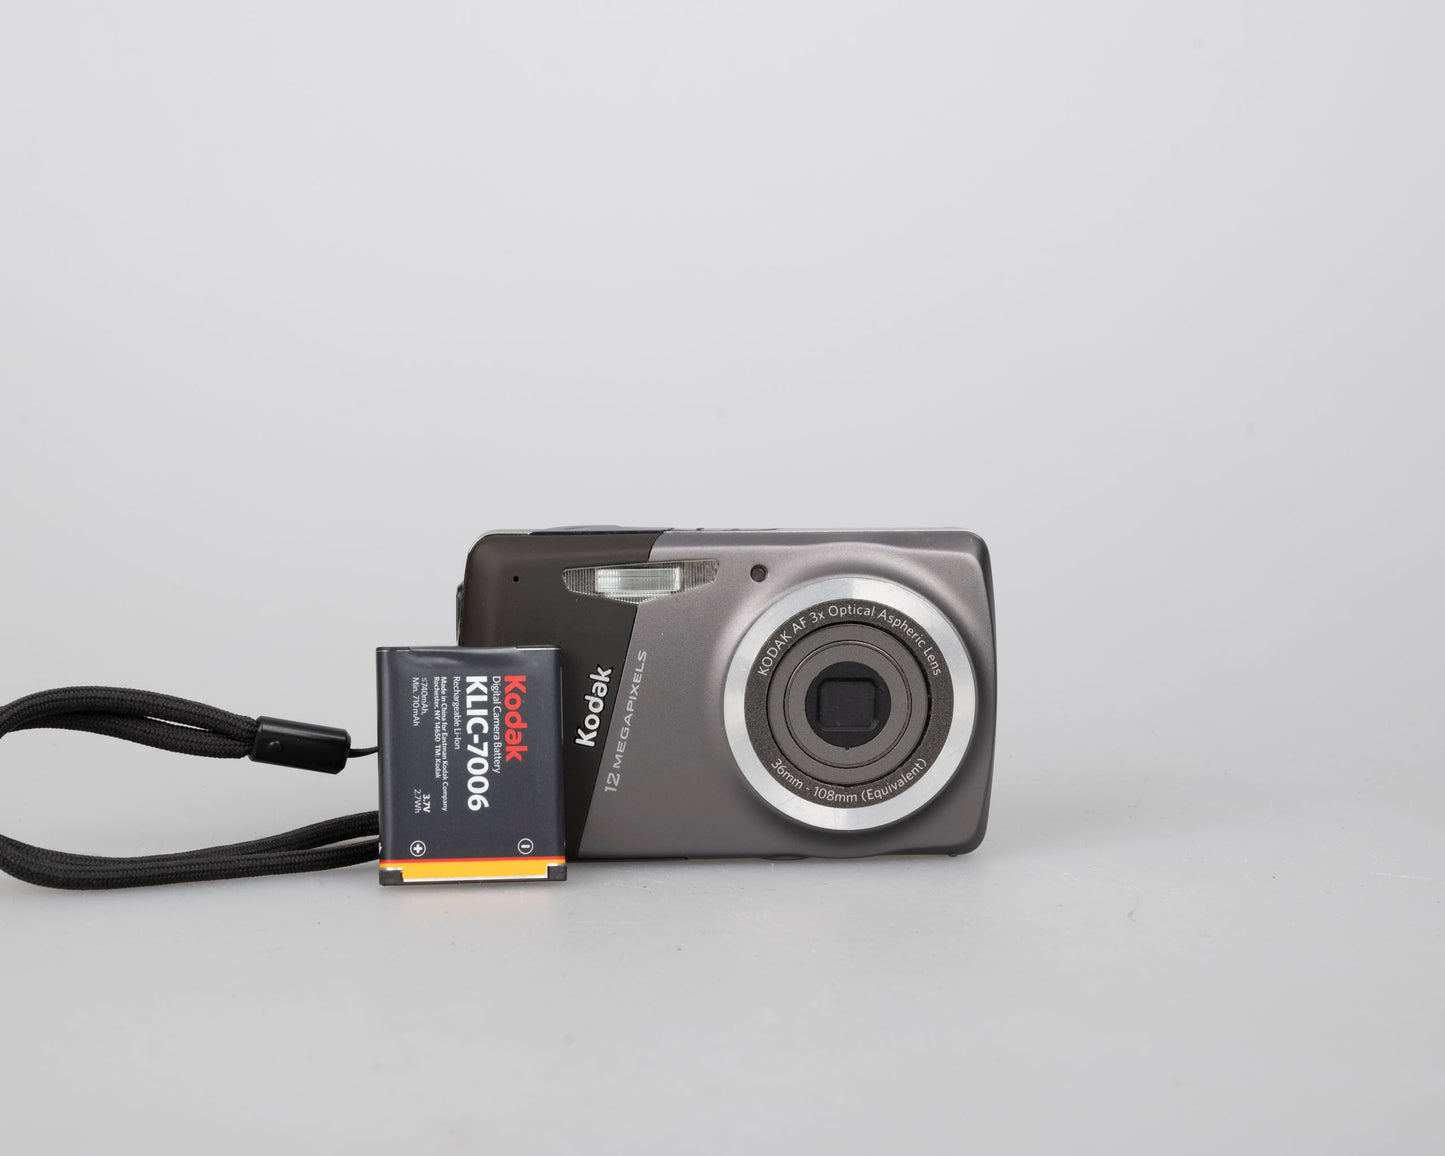 Appareil photo numérique à capteur CCD Kodak Easyshare M530 12 MP avec chargeur + batterie (utilise la mémoire de la carte SD)